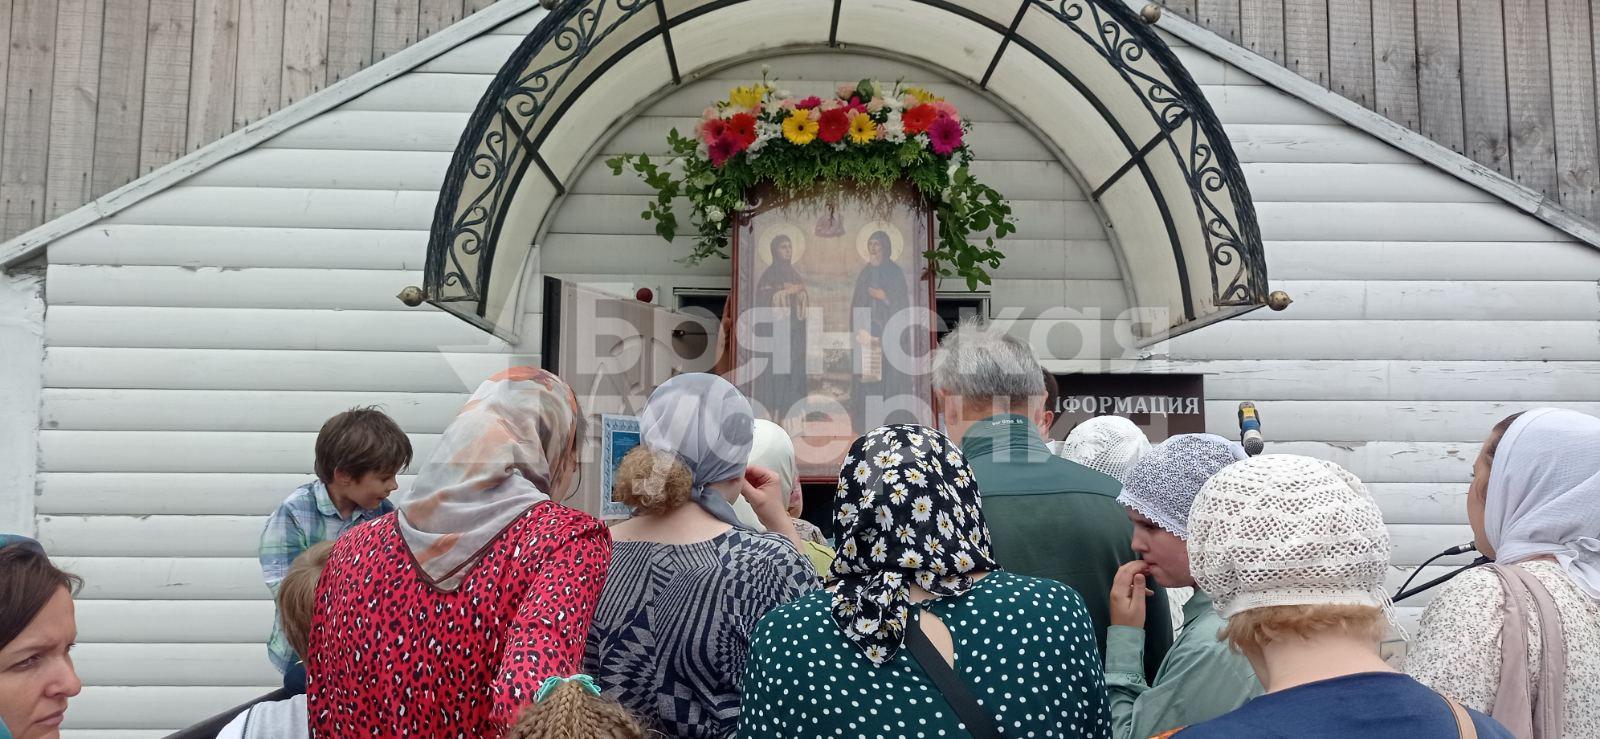 В Брянске освятили закладной камень на месте будущей церкви Петра и Февронии